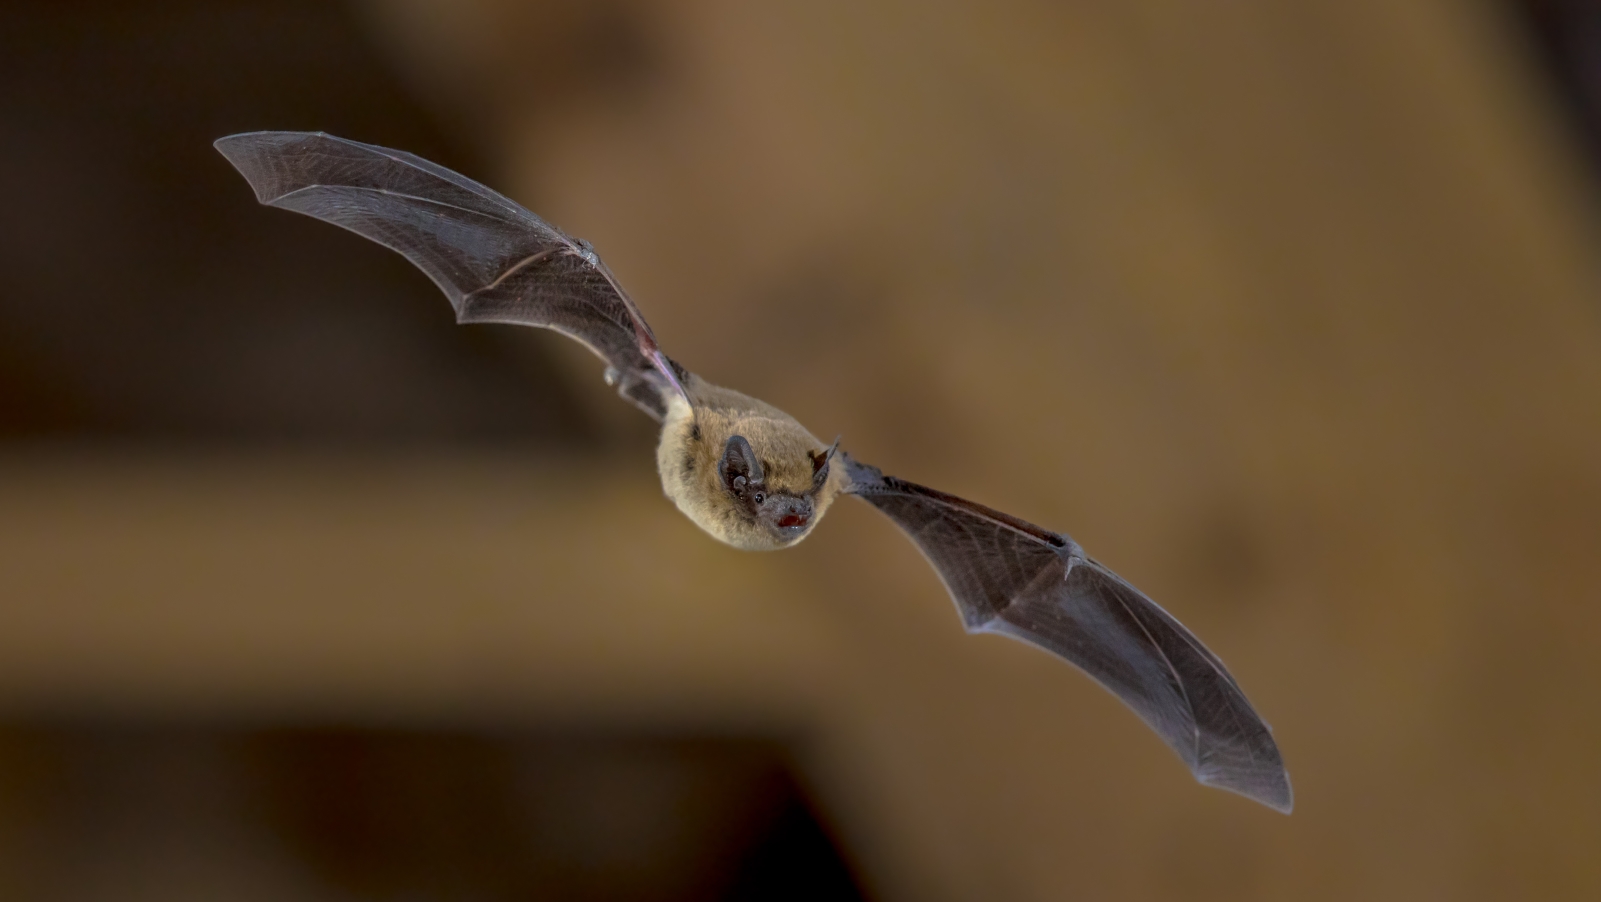 A pipistrelle bat navigating in darkness. Photo by Rudmer Zwerver/Shutterstock.com